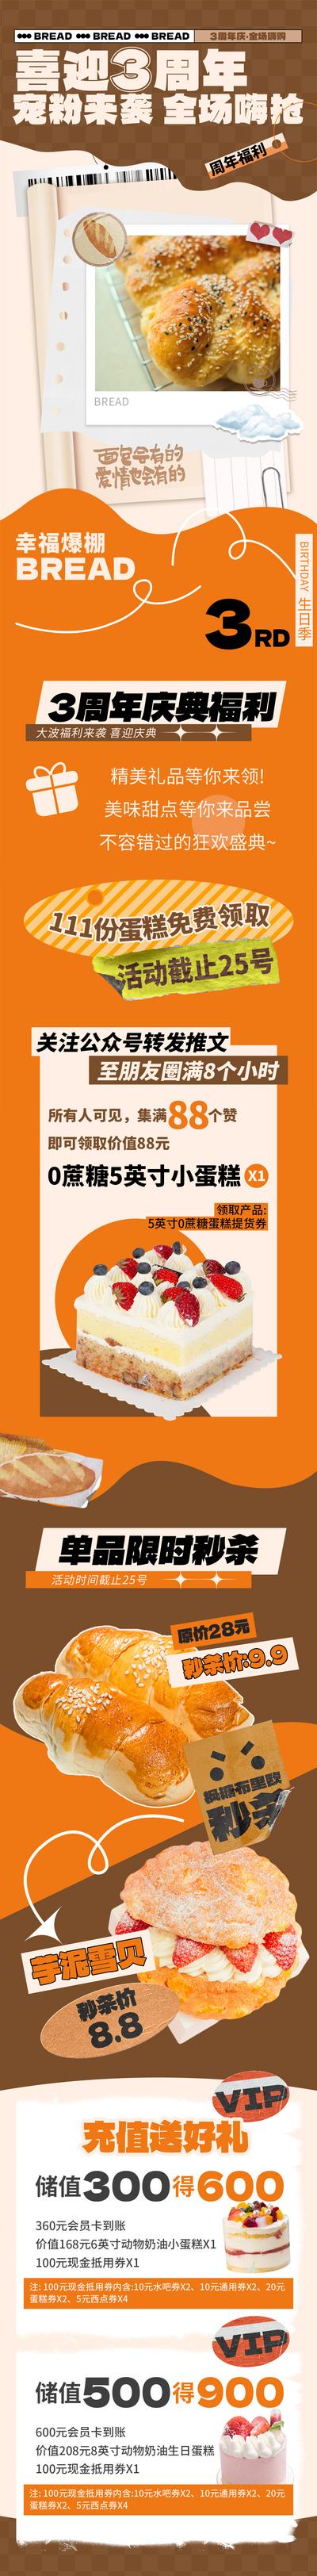 【南门网】海报 长图 烘焙 面包店 周年庆 宠粉 福利 活动